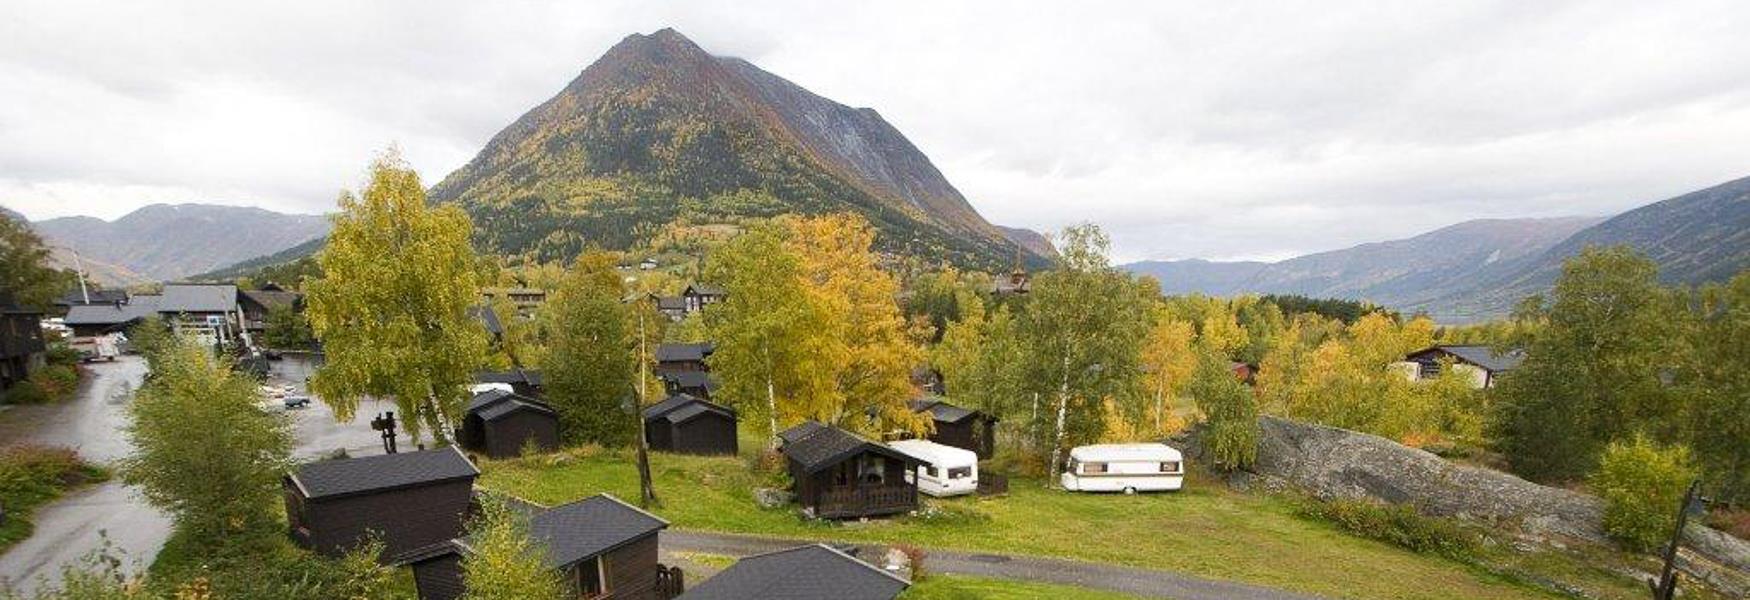 Hytte og camping, Lomseggen, Lom, Nordal camping, Jotunheimen